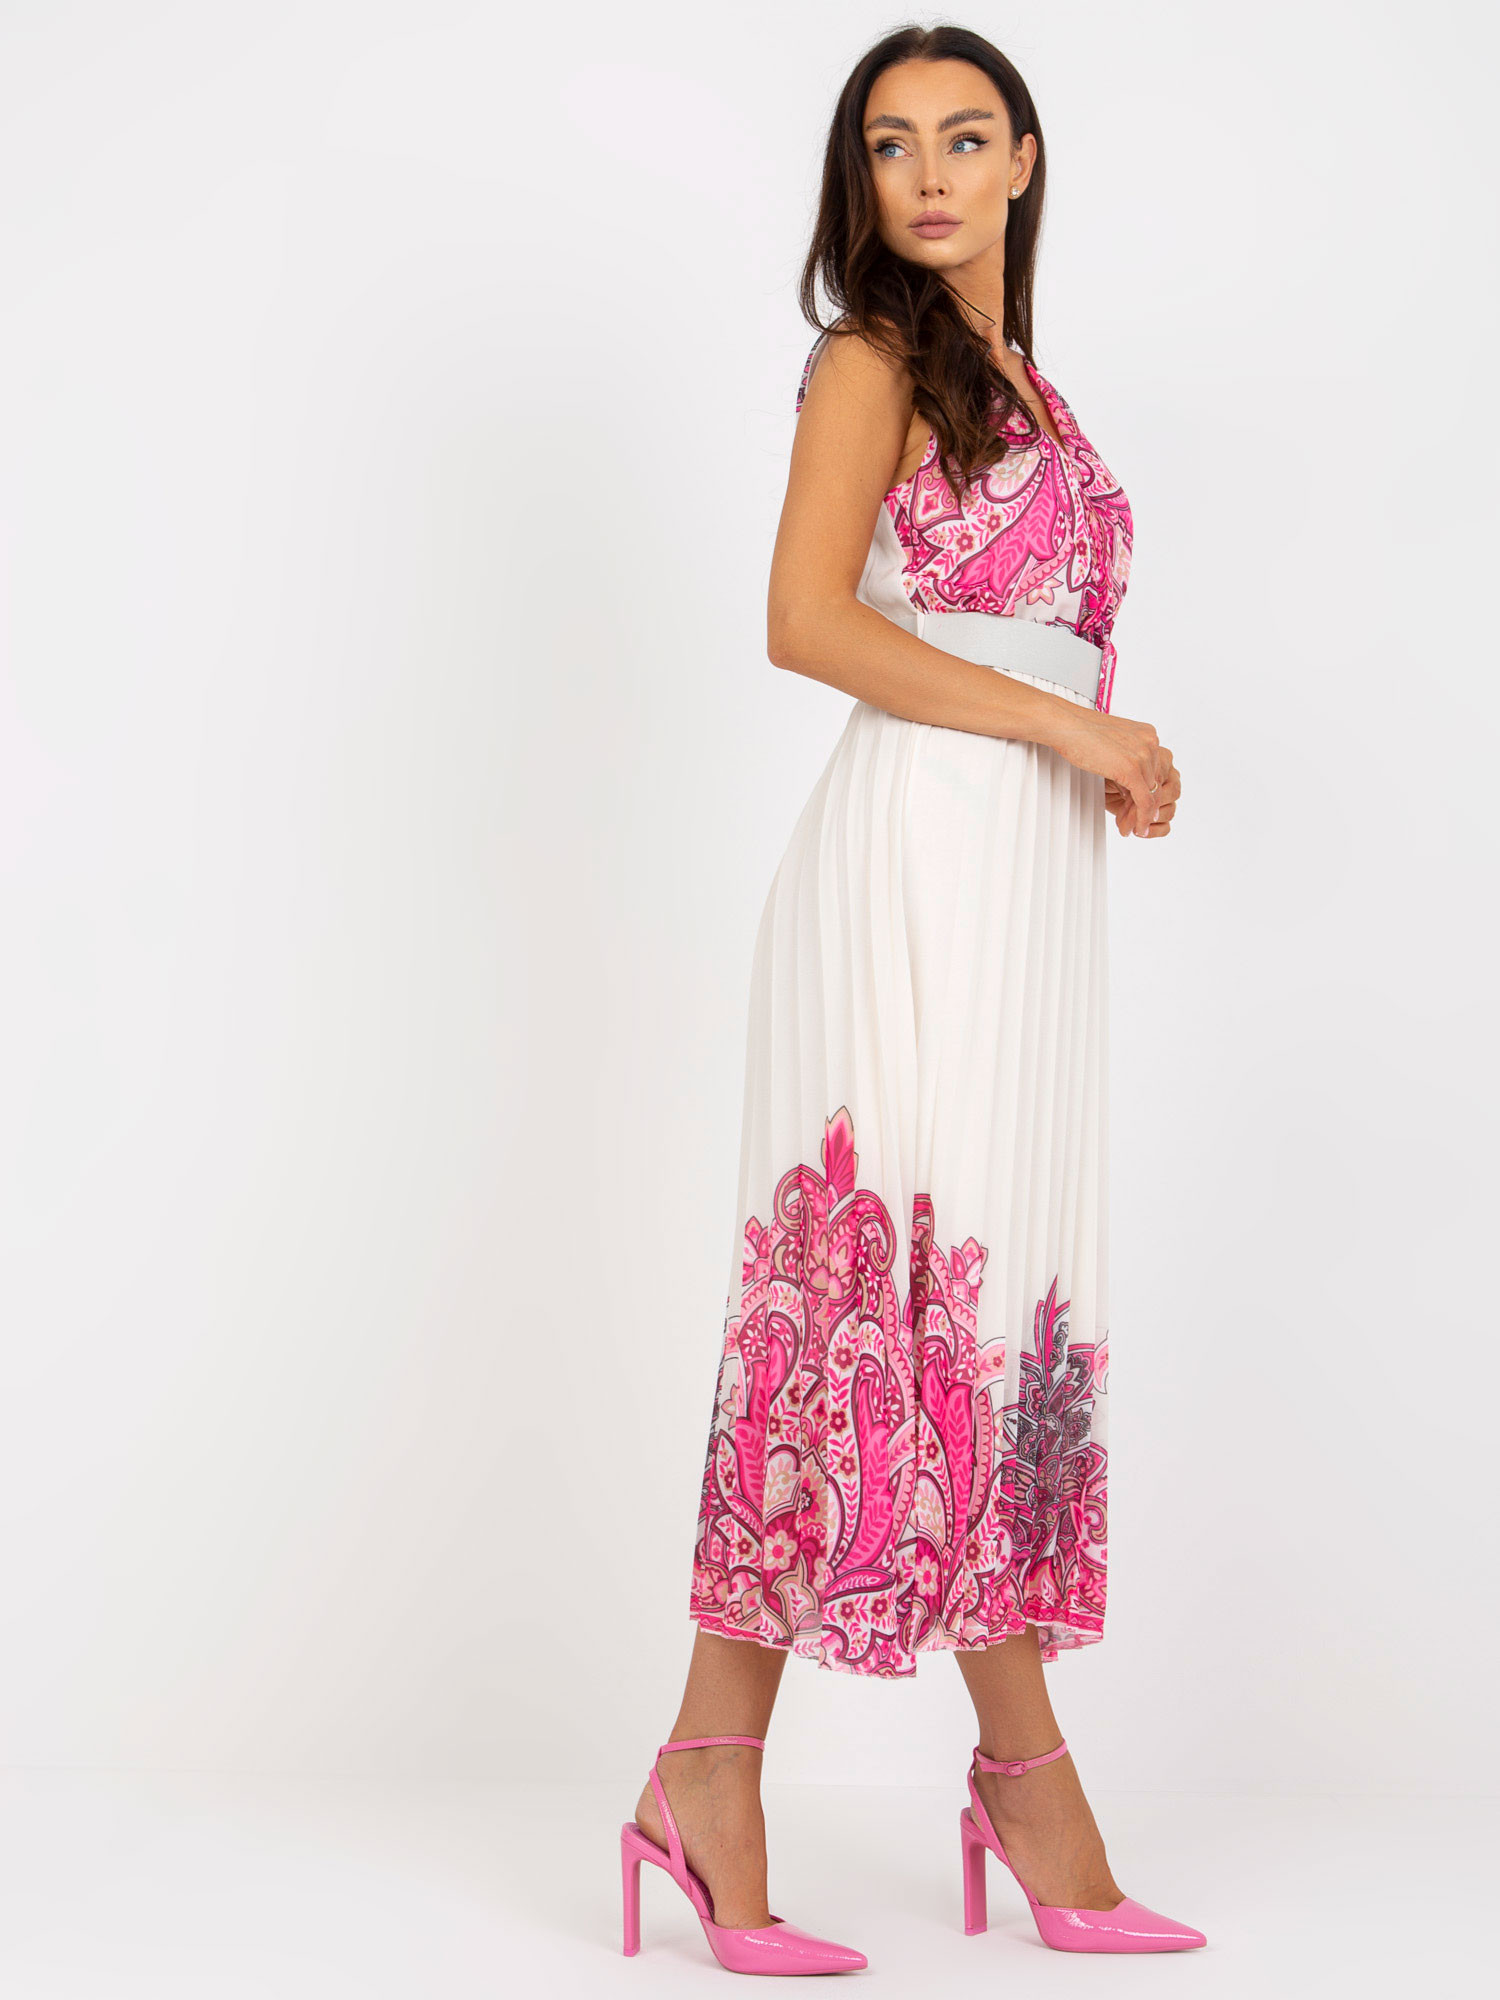 Dámské šaty DHJ SK model 17513656 bílé a růžové jedna velikost - FPrice